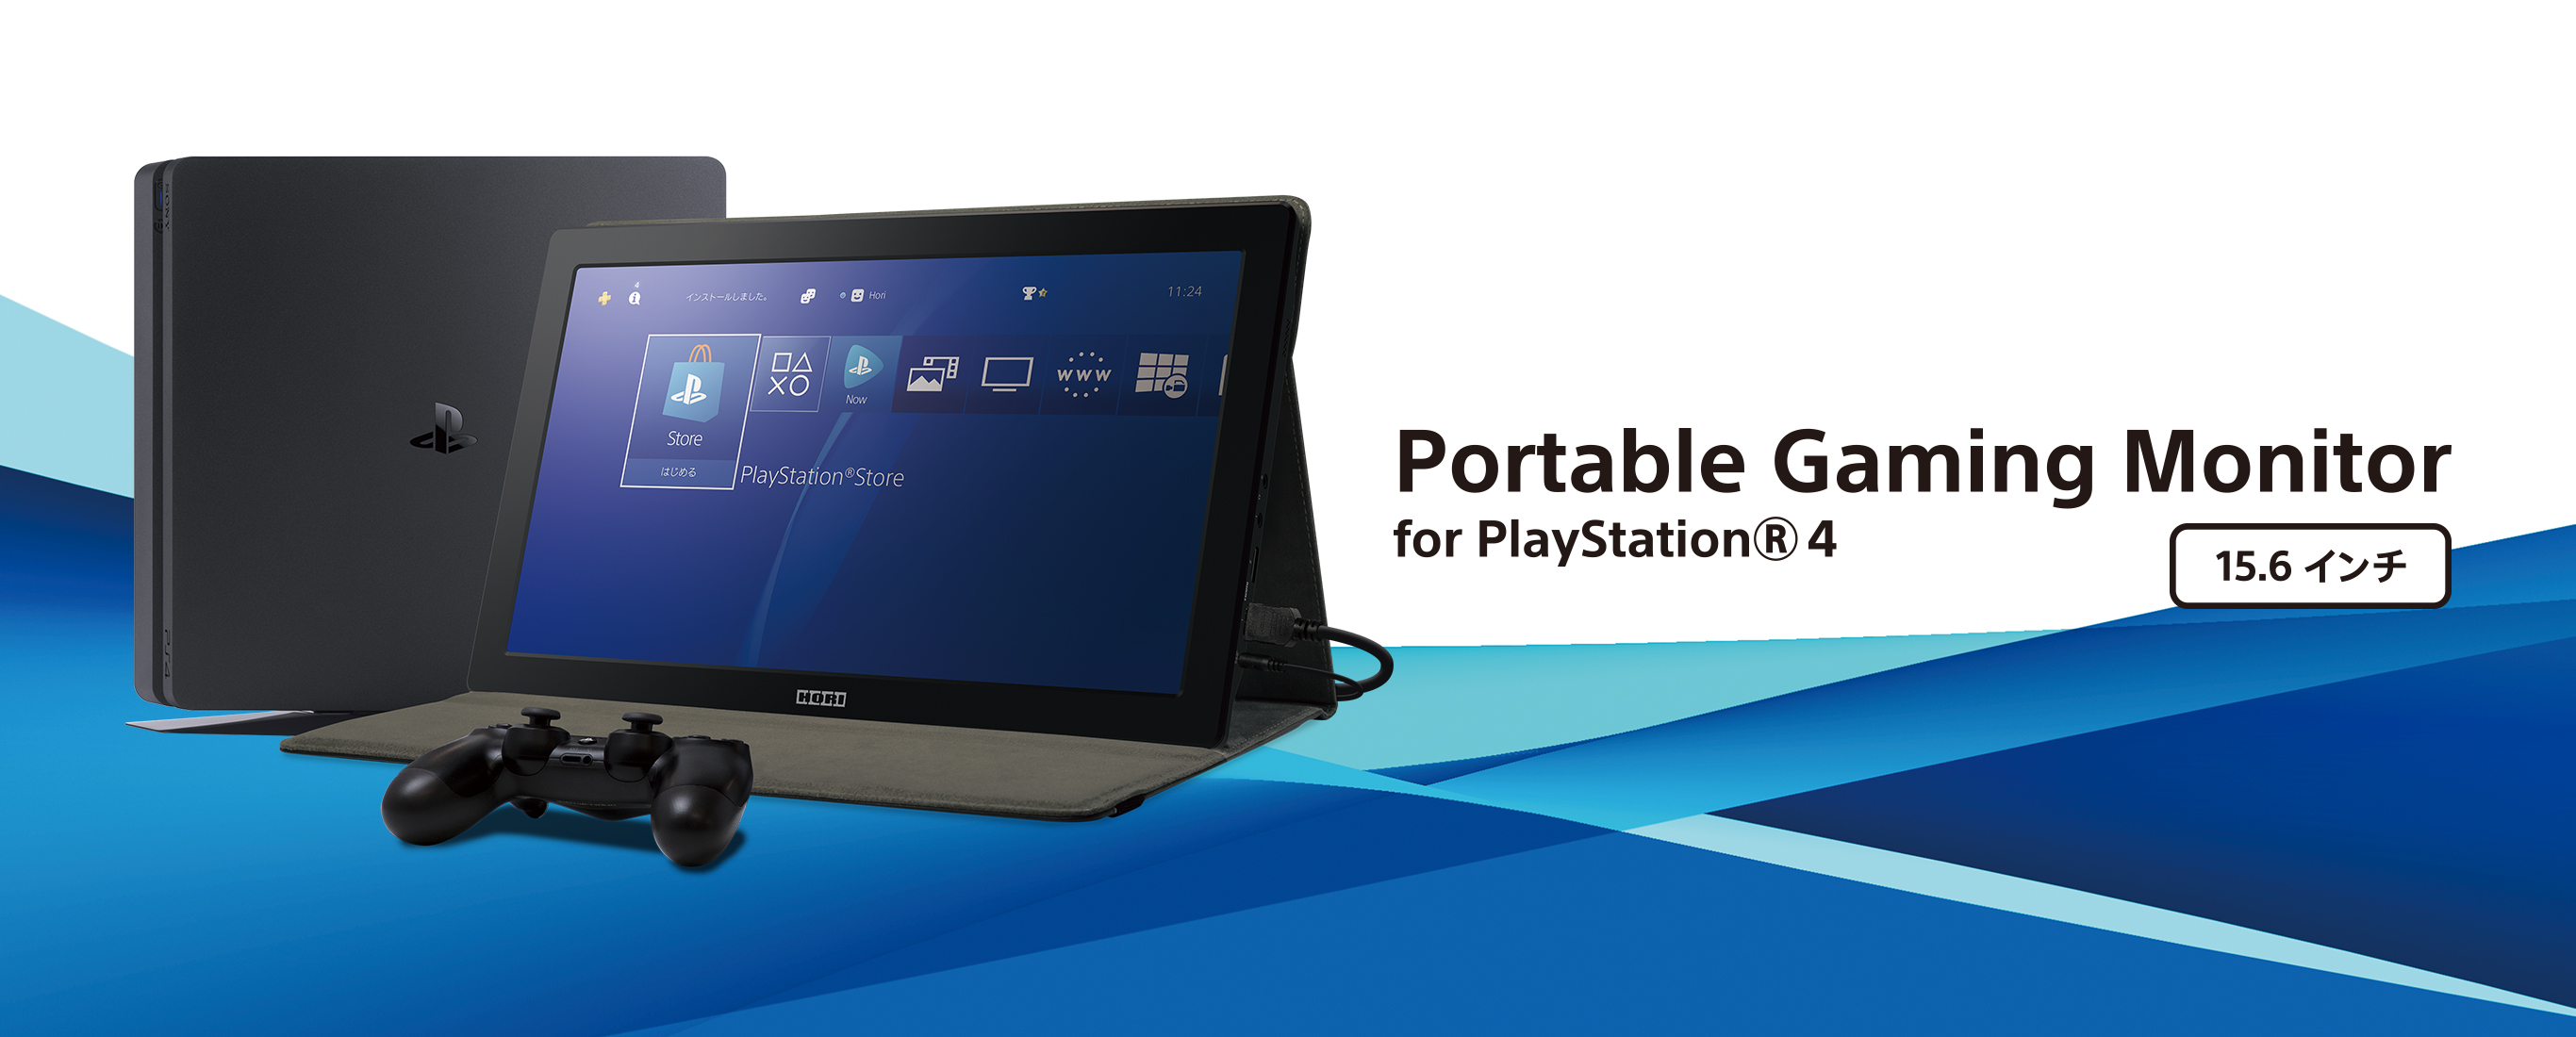 株式会社 HORI | Portable Gaming Monitor for PlayStation®4